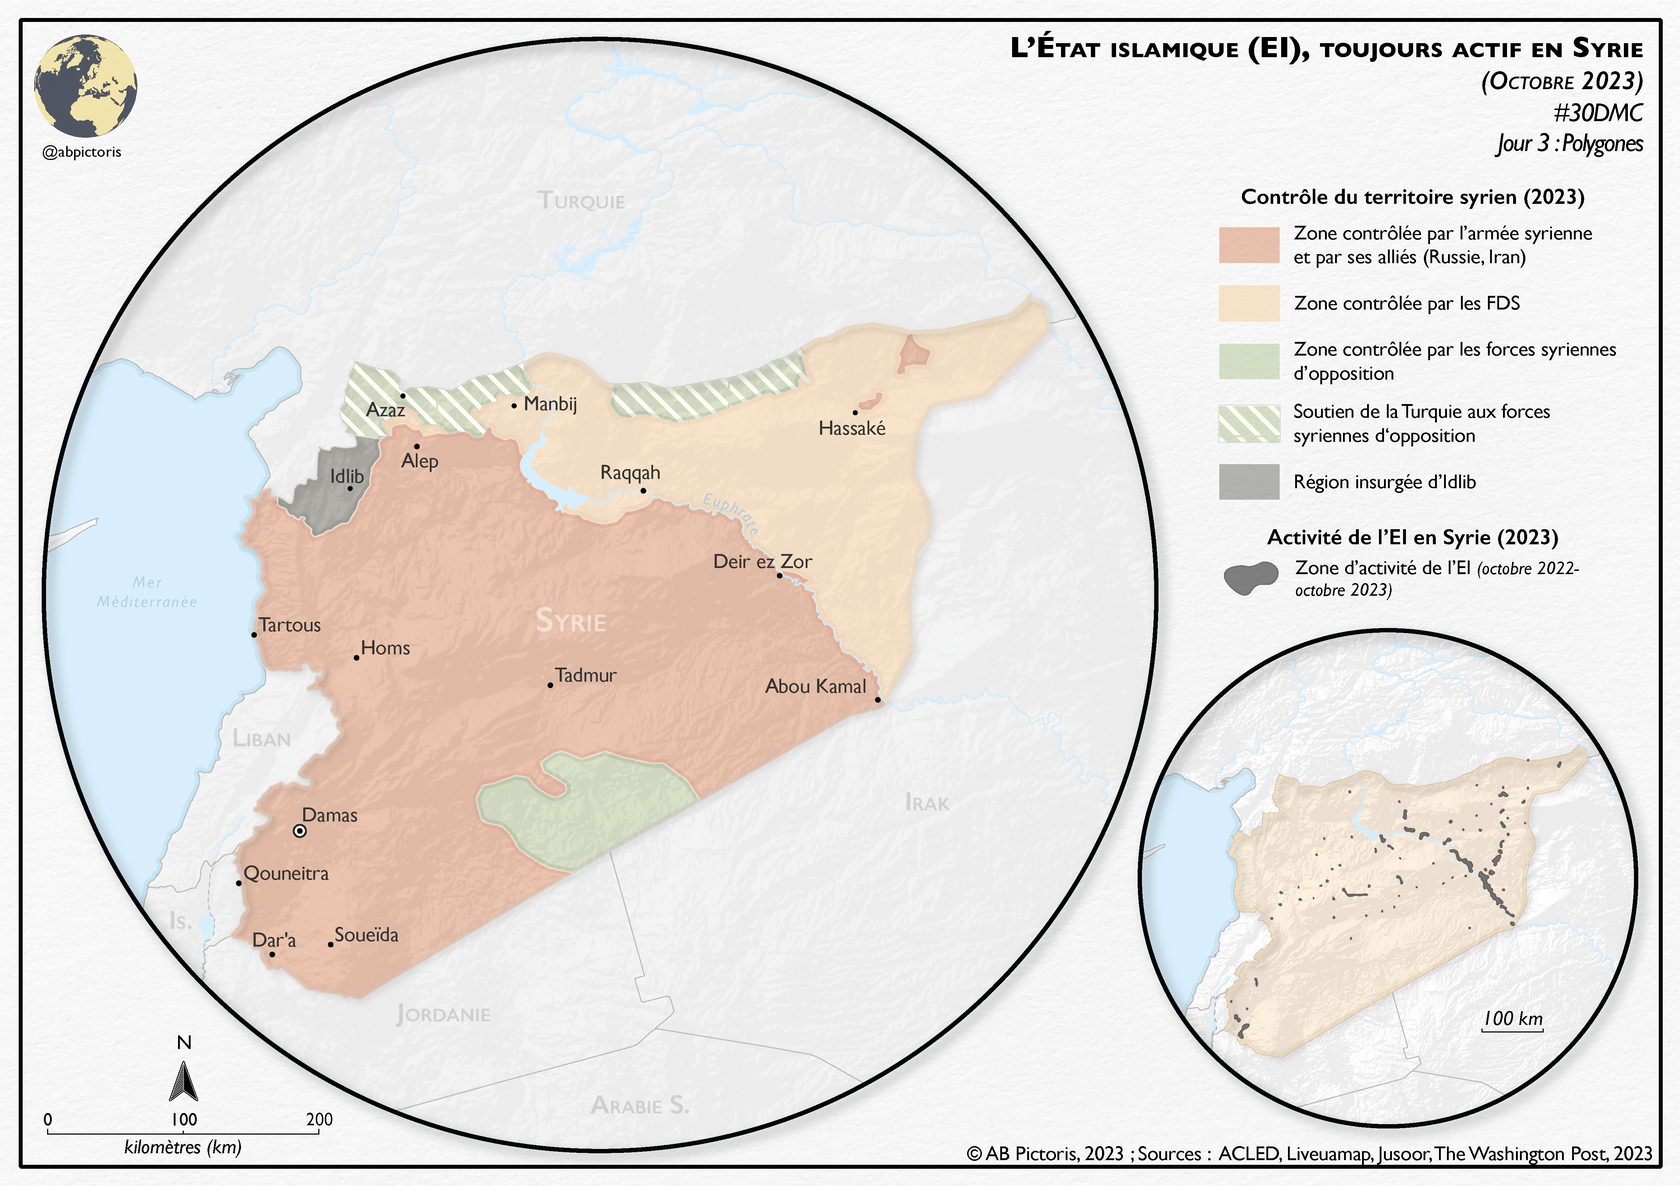 Carte actuelle de la répartition territoriale en Syrie en 2023, montrant les zones d'influence de l'armée syrienne, des Forces démocratiques syriennes (FDS), des zones contrôlées par l'opposition soutenue par la Turquie, la région d'Idlib et les activités